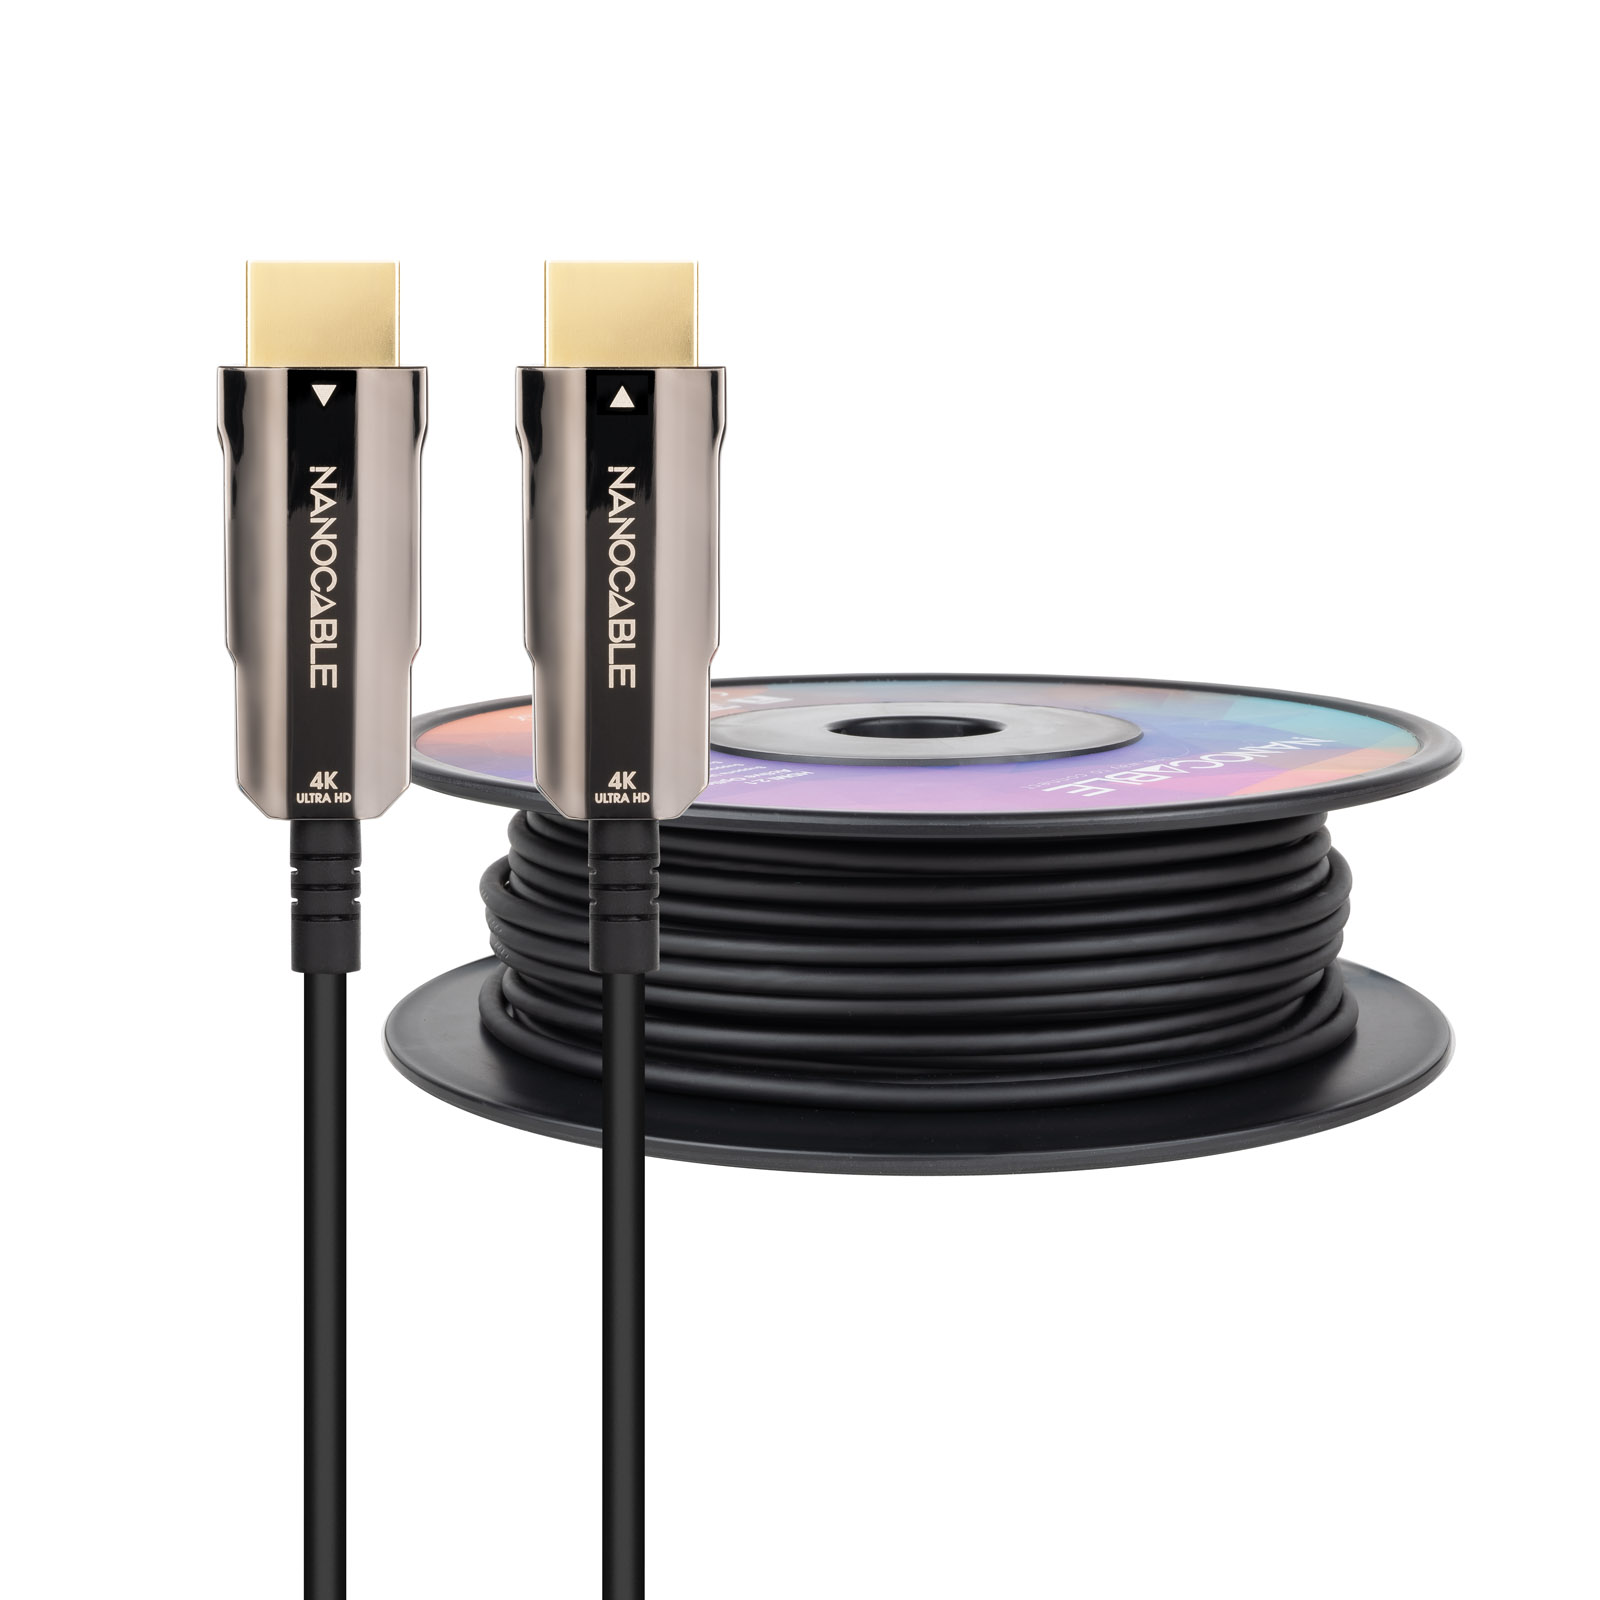 Nanocable Câble HDMI v2.0 Mâle vers HDMI v2.0 Mâle 40m - 4K@60Hz 18Gbps - Couleur Noir